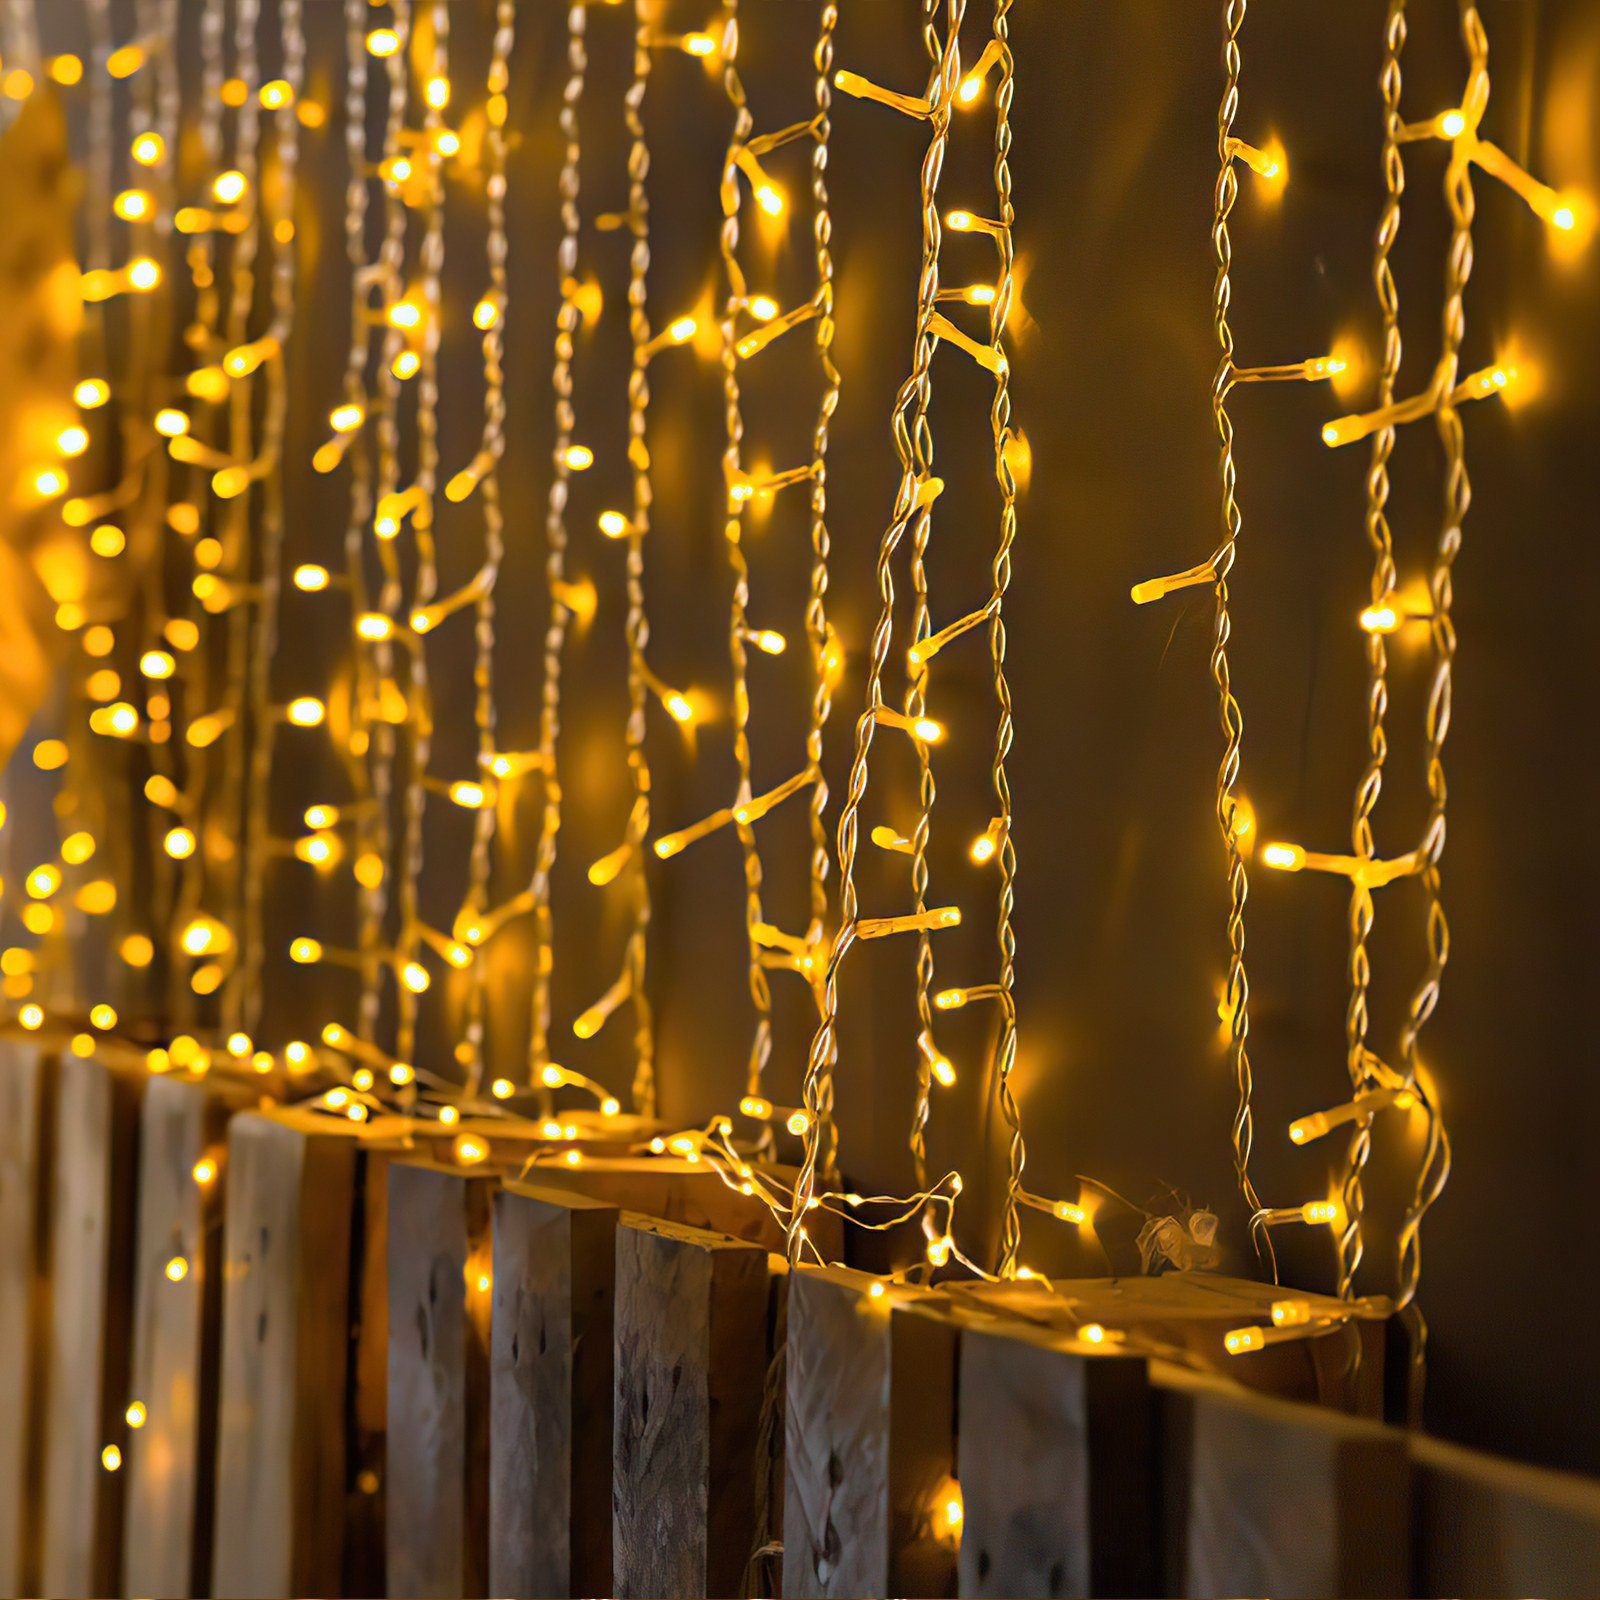 Gimisgu LED-Lichterkette 10-200m LED Lichterkette Weihnachten Beleuchtung Wasserdicht warmweiß Außen Deko IP44, Innen